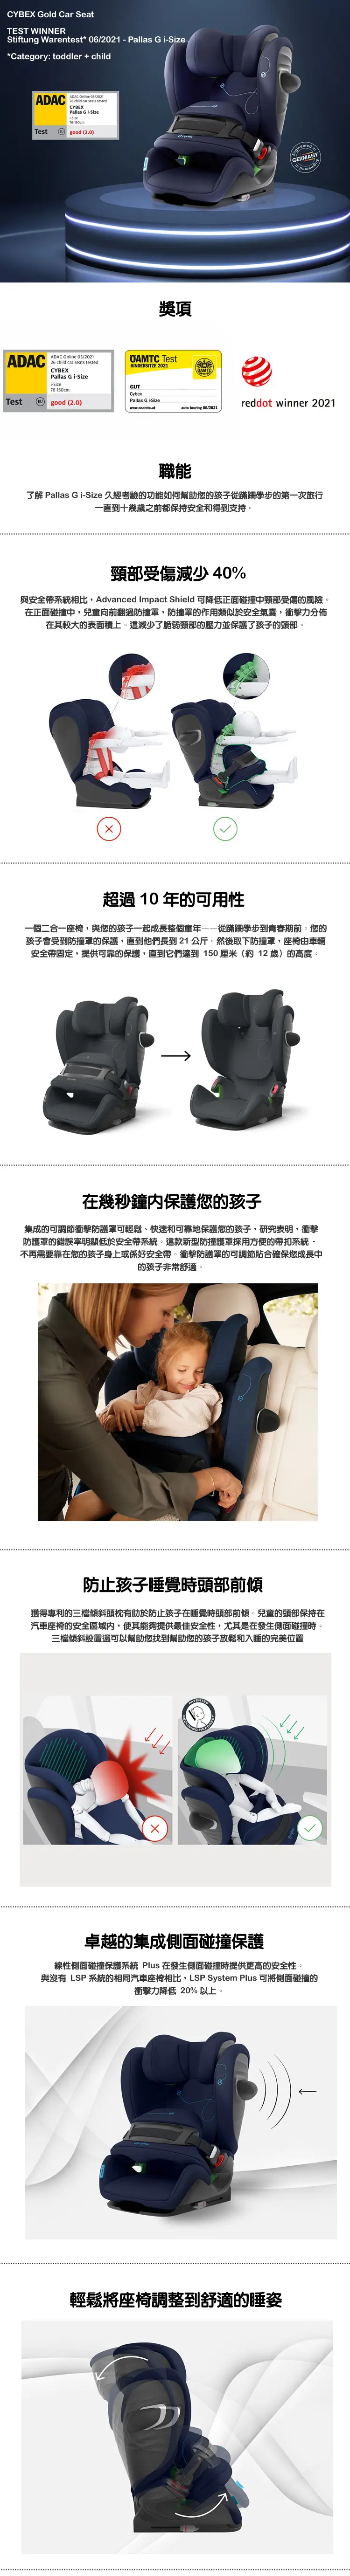 Cybex PALLAS G i-Size 婴幼儿汽车安全座椅